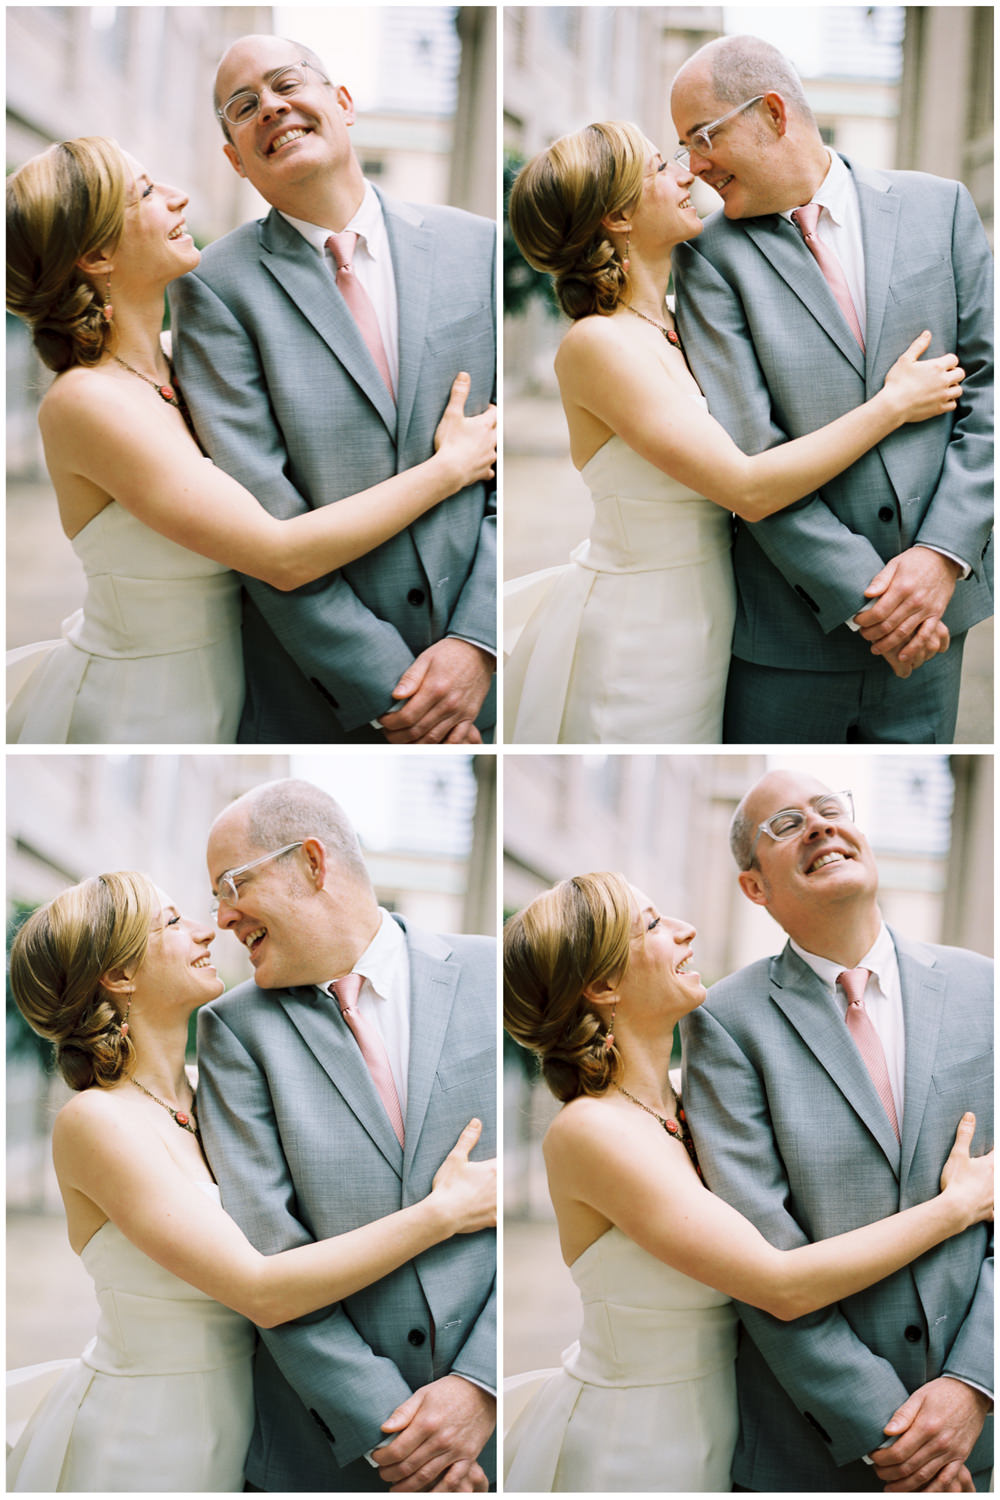 Seattle wedding photographers: Angela and Matthew